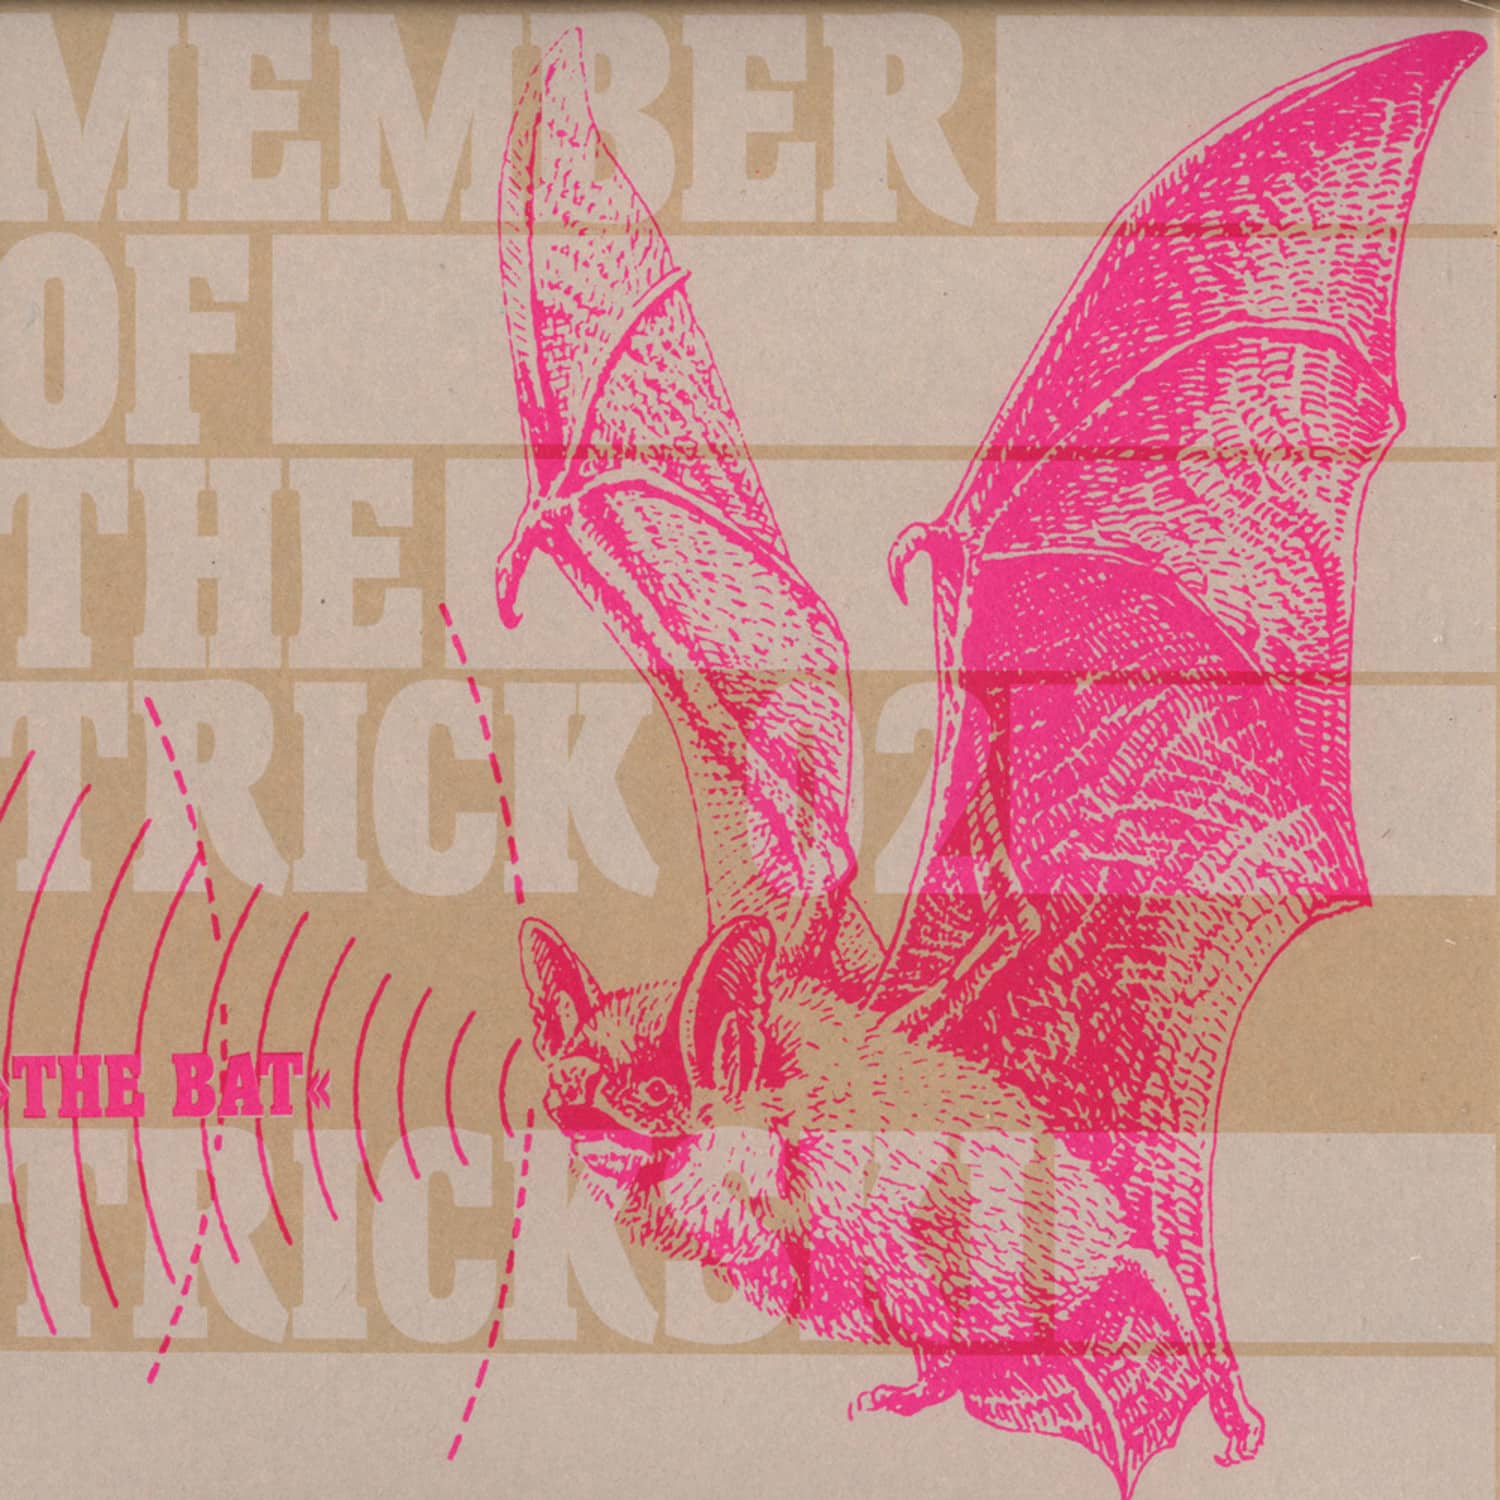 Trickski - THE BAT EP